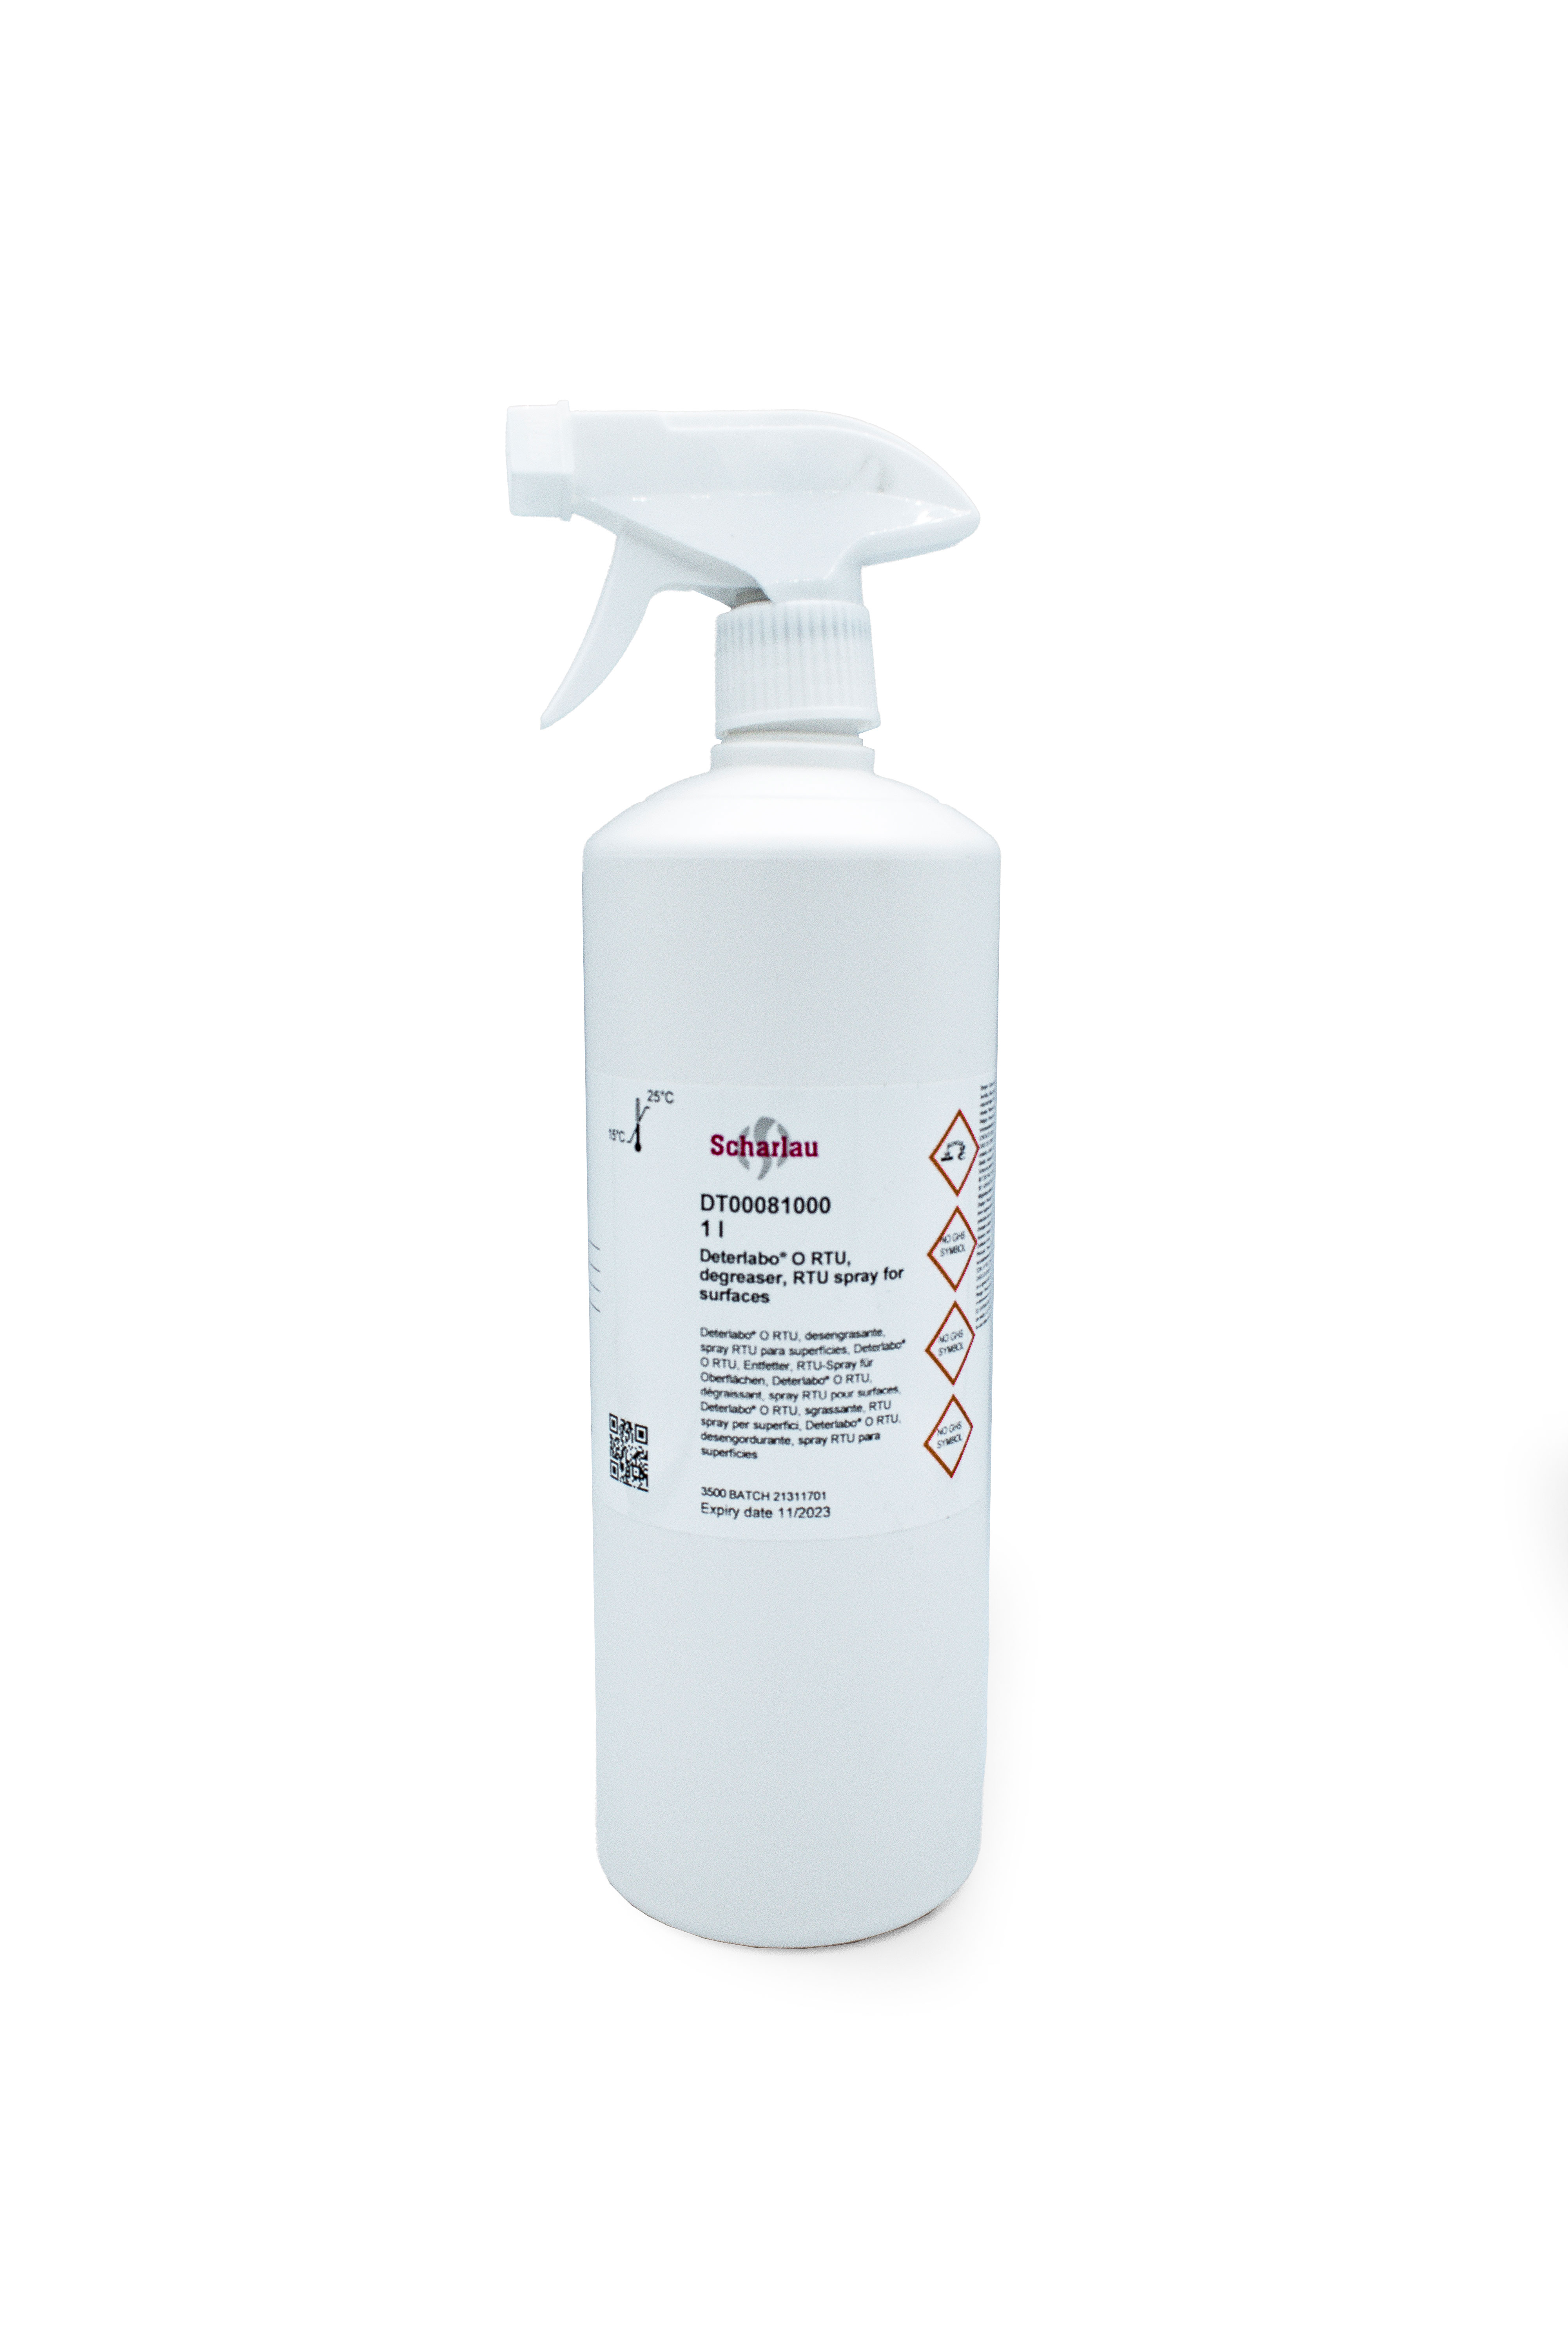 Desengrasante, spray RTU para superficies, Deterlabo® O RTU